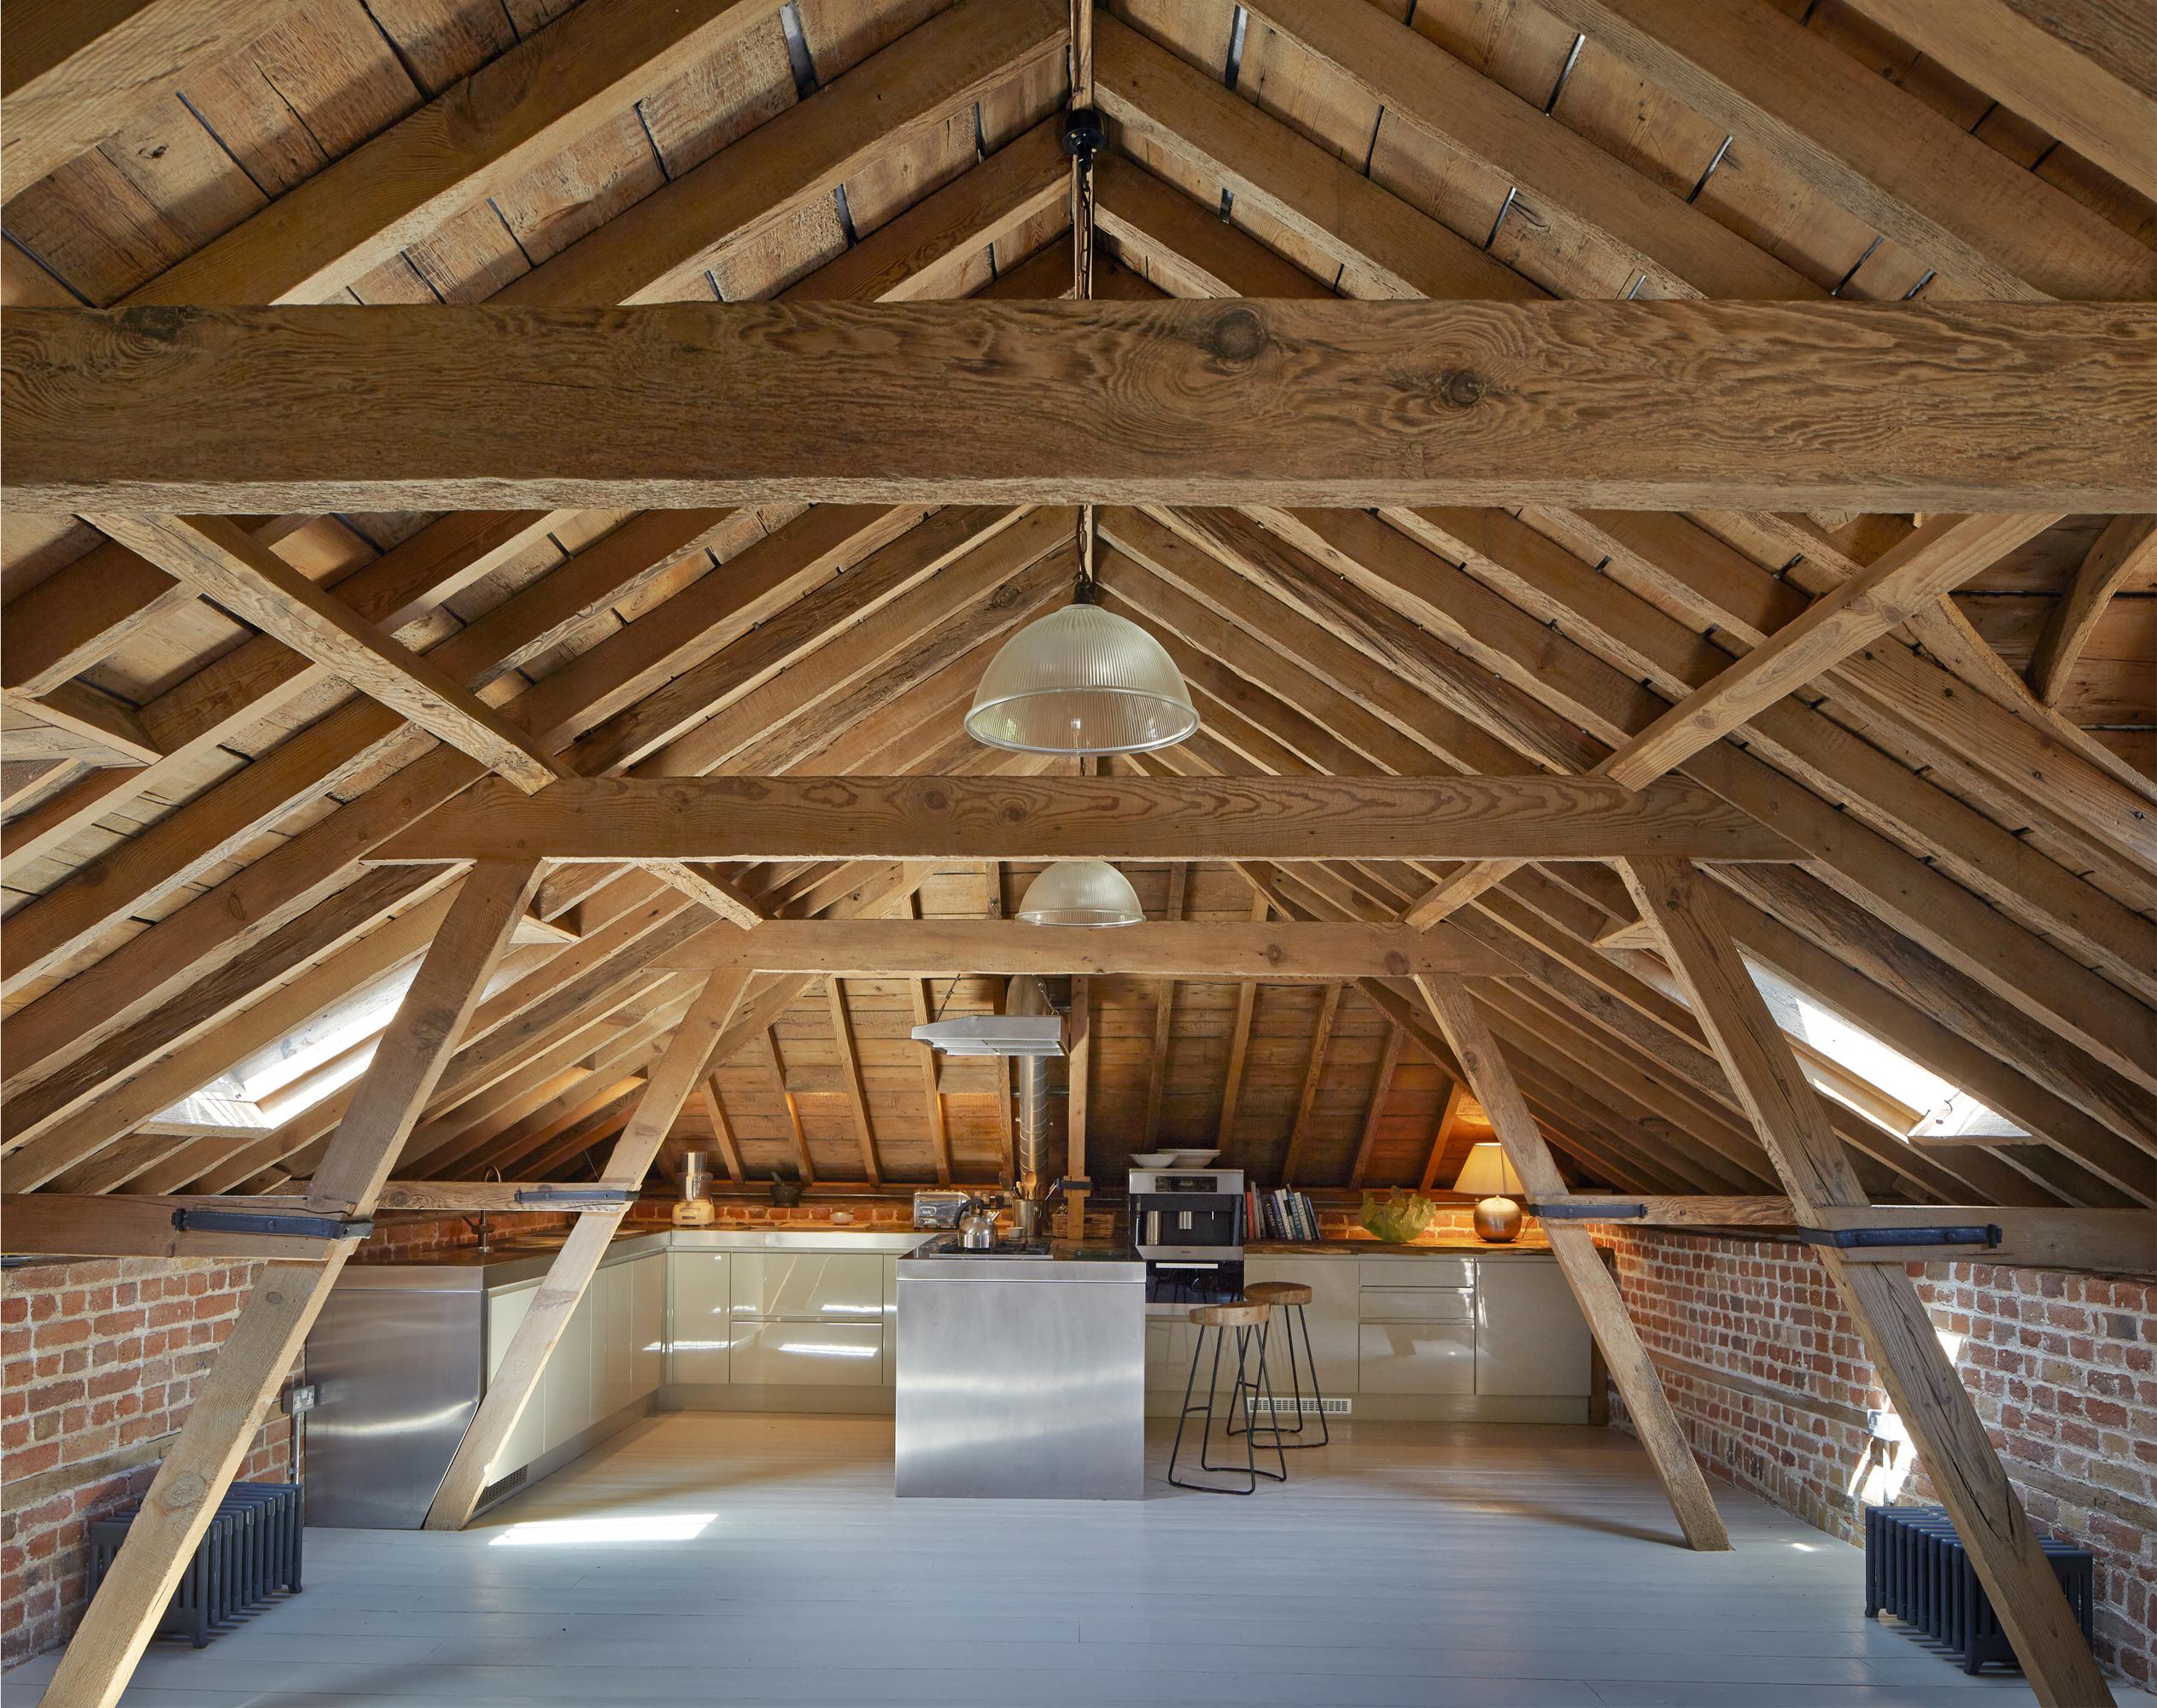 Küche auf dem Dachboden #hocker #balken #dachboden #holzbalken #dachbalken #offeneküche #ziegelstein #ziegelsteinoptik ©Manser Medal/Alan Williams, Architekt: Emrys Architect